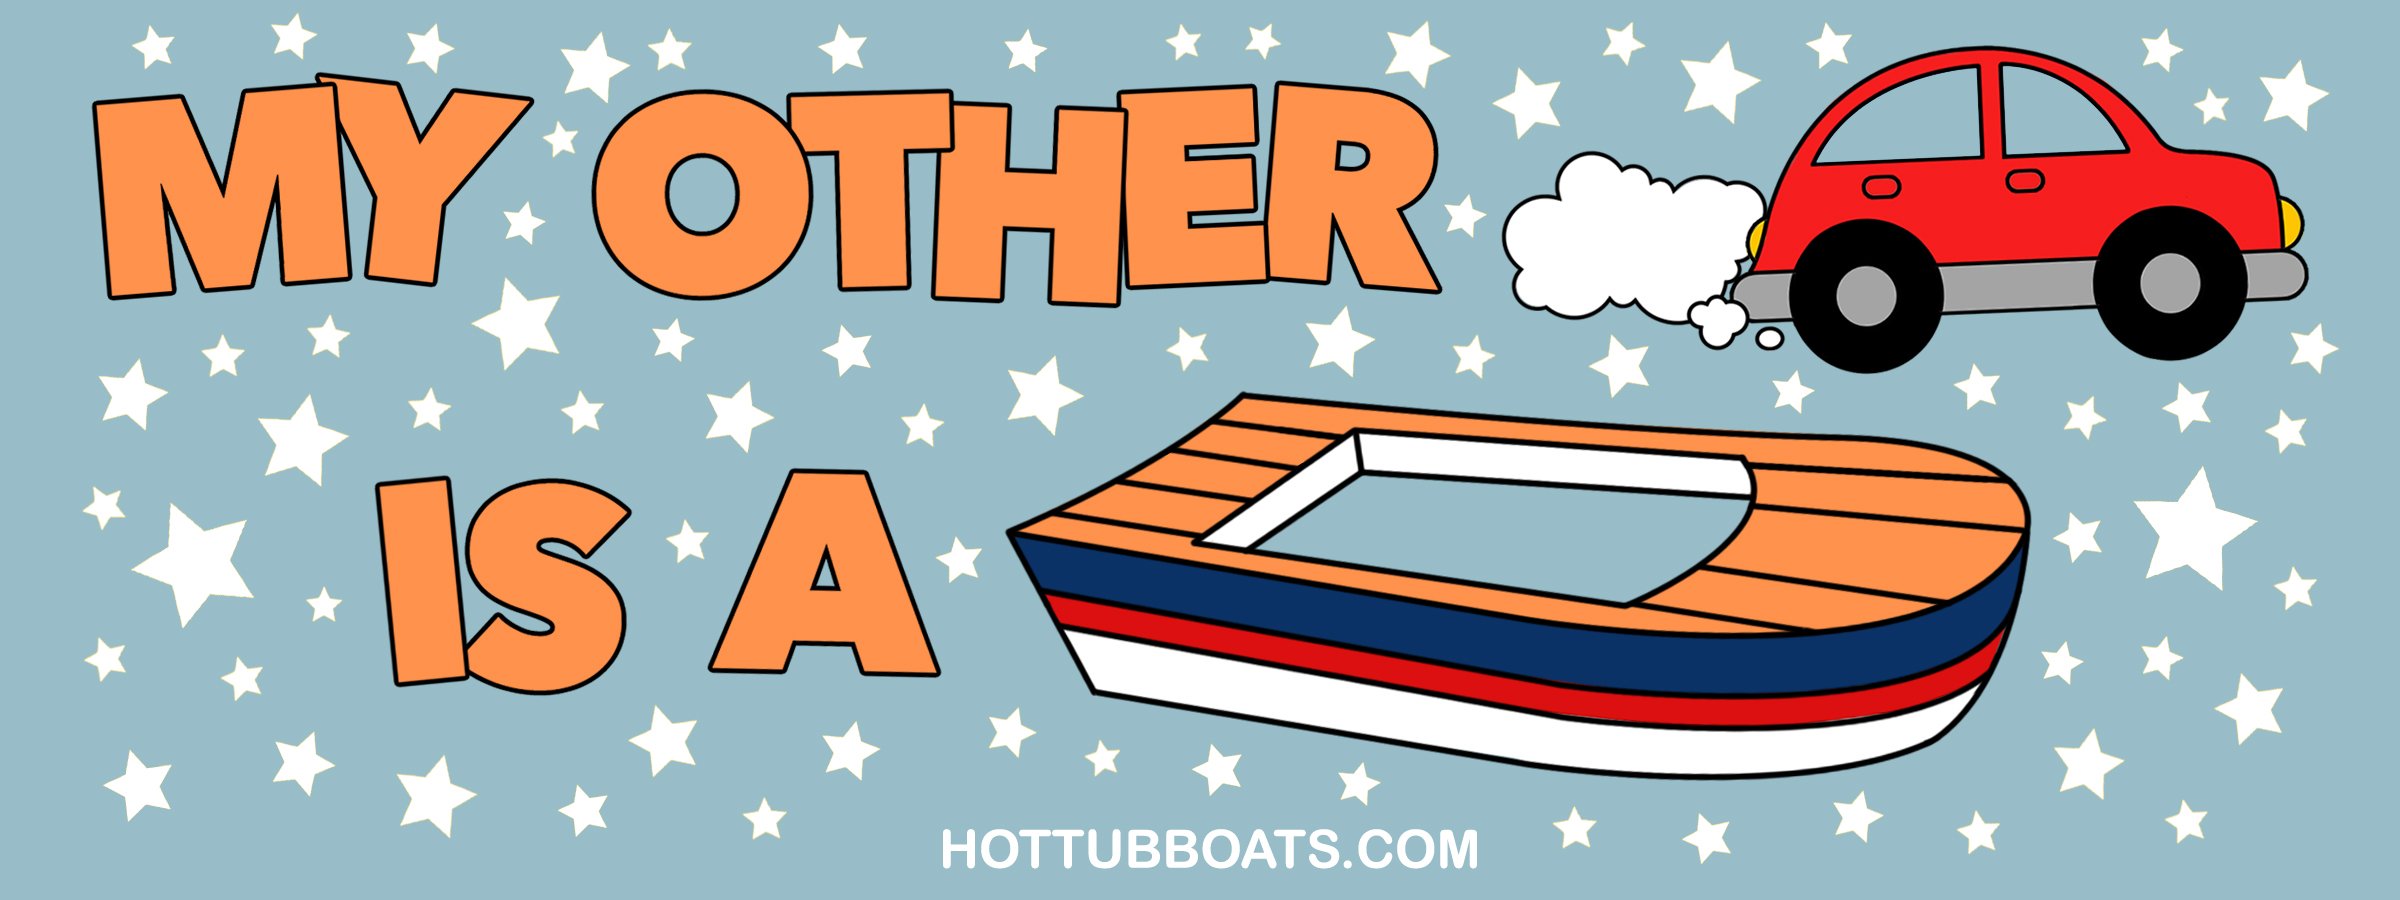 www.hottubboats.com